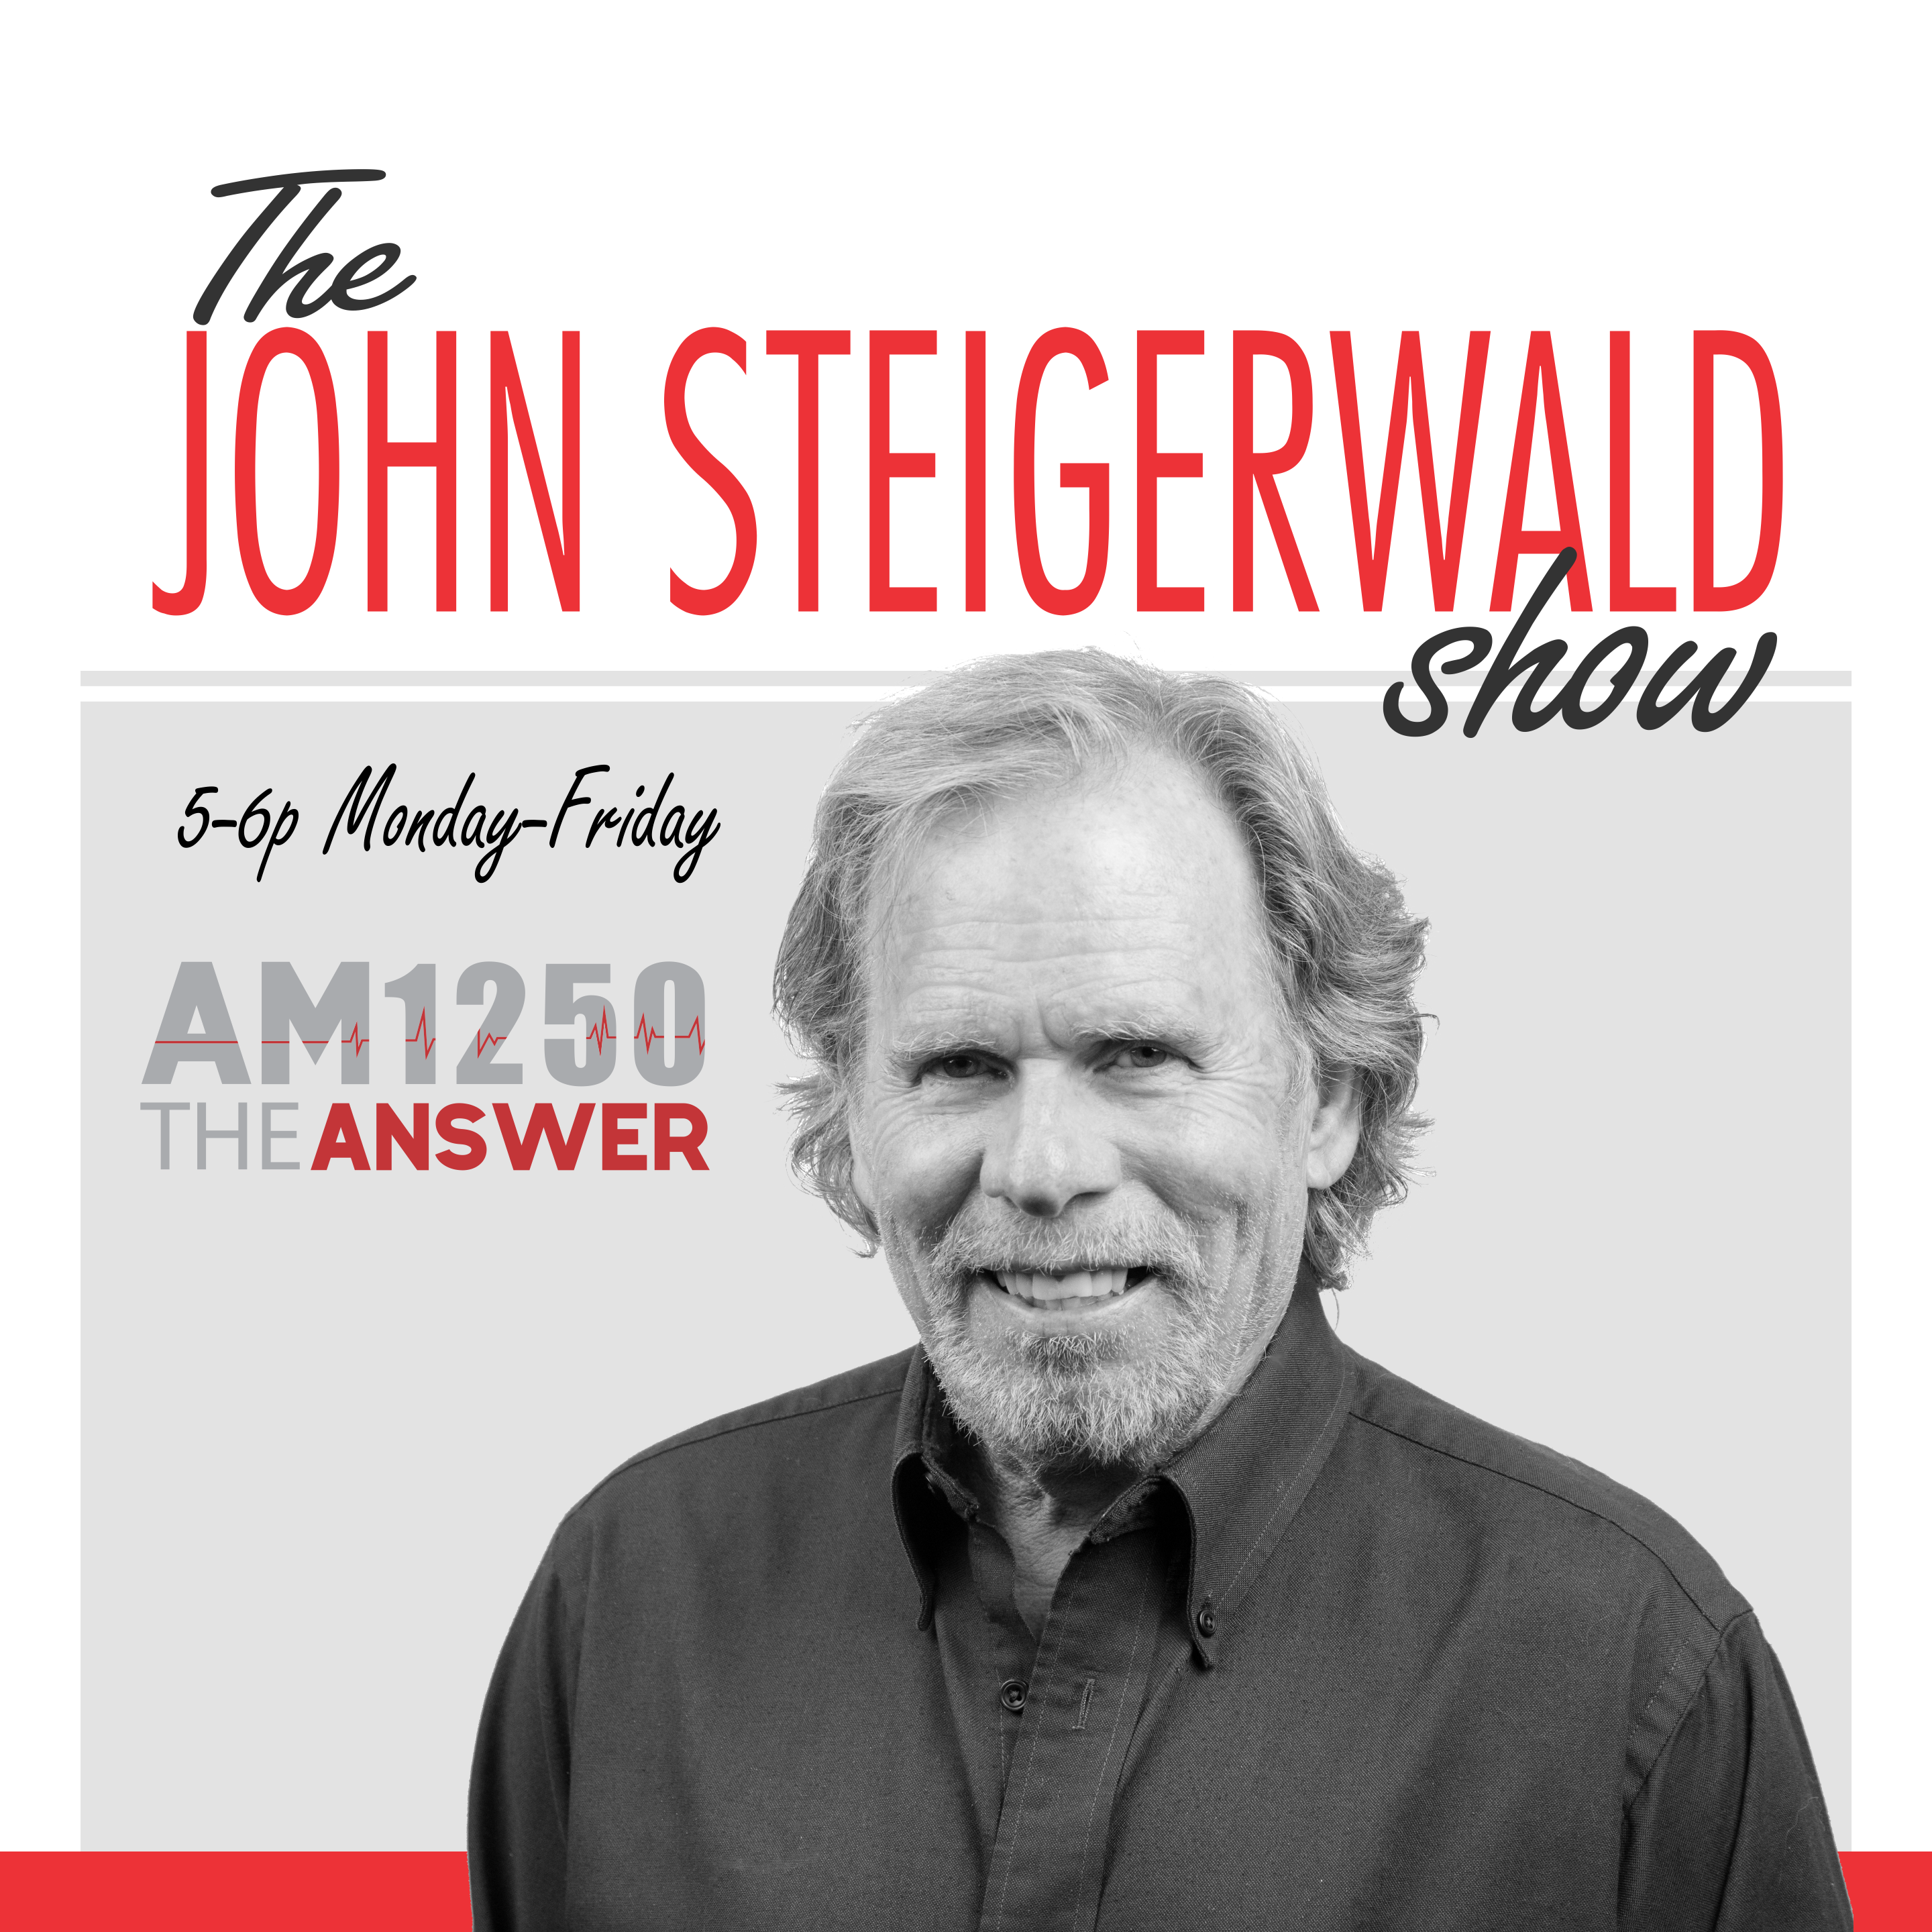 The John Steigerwald Show - Tuesday, November 6, 2018